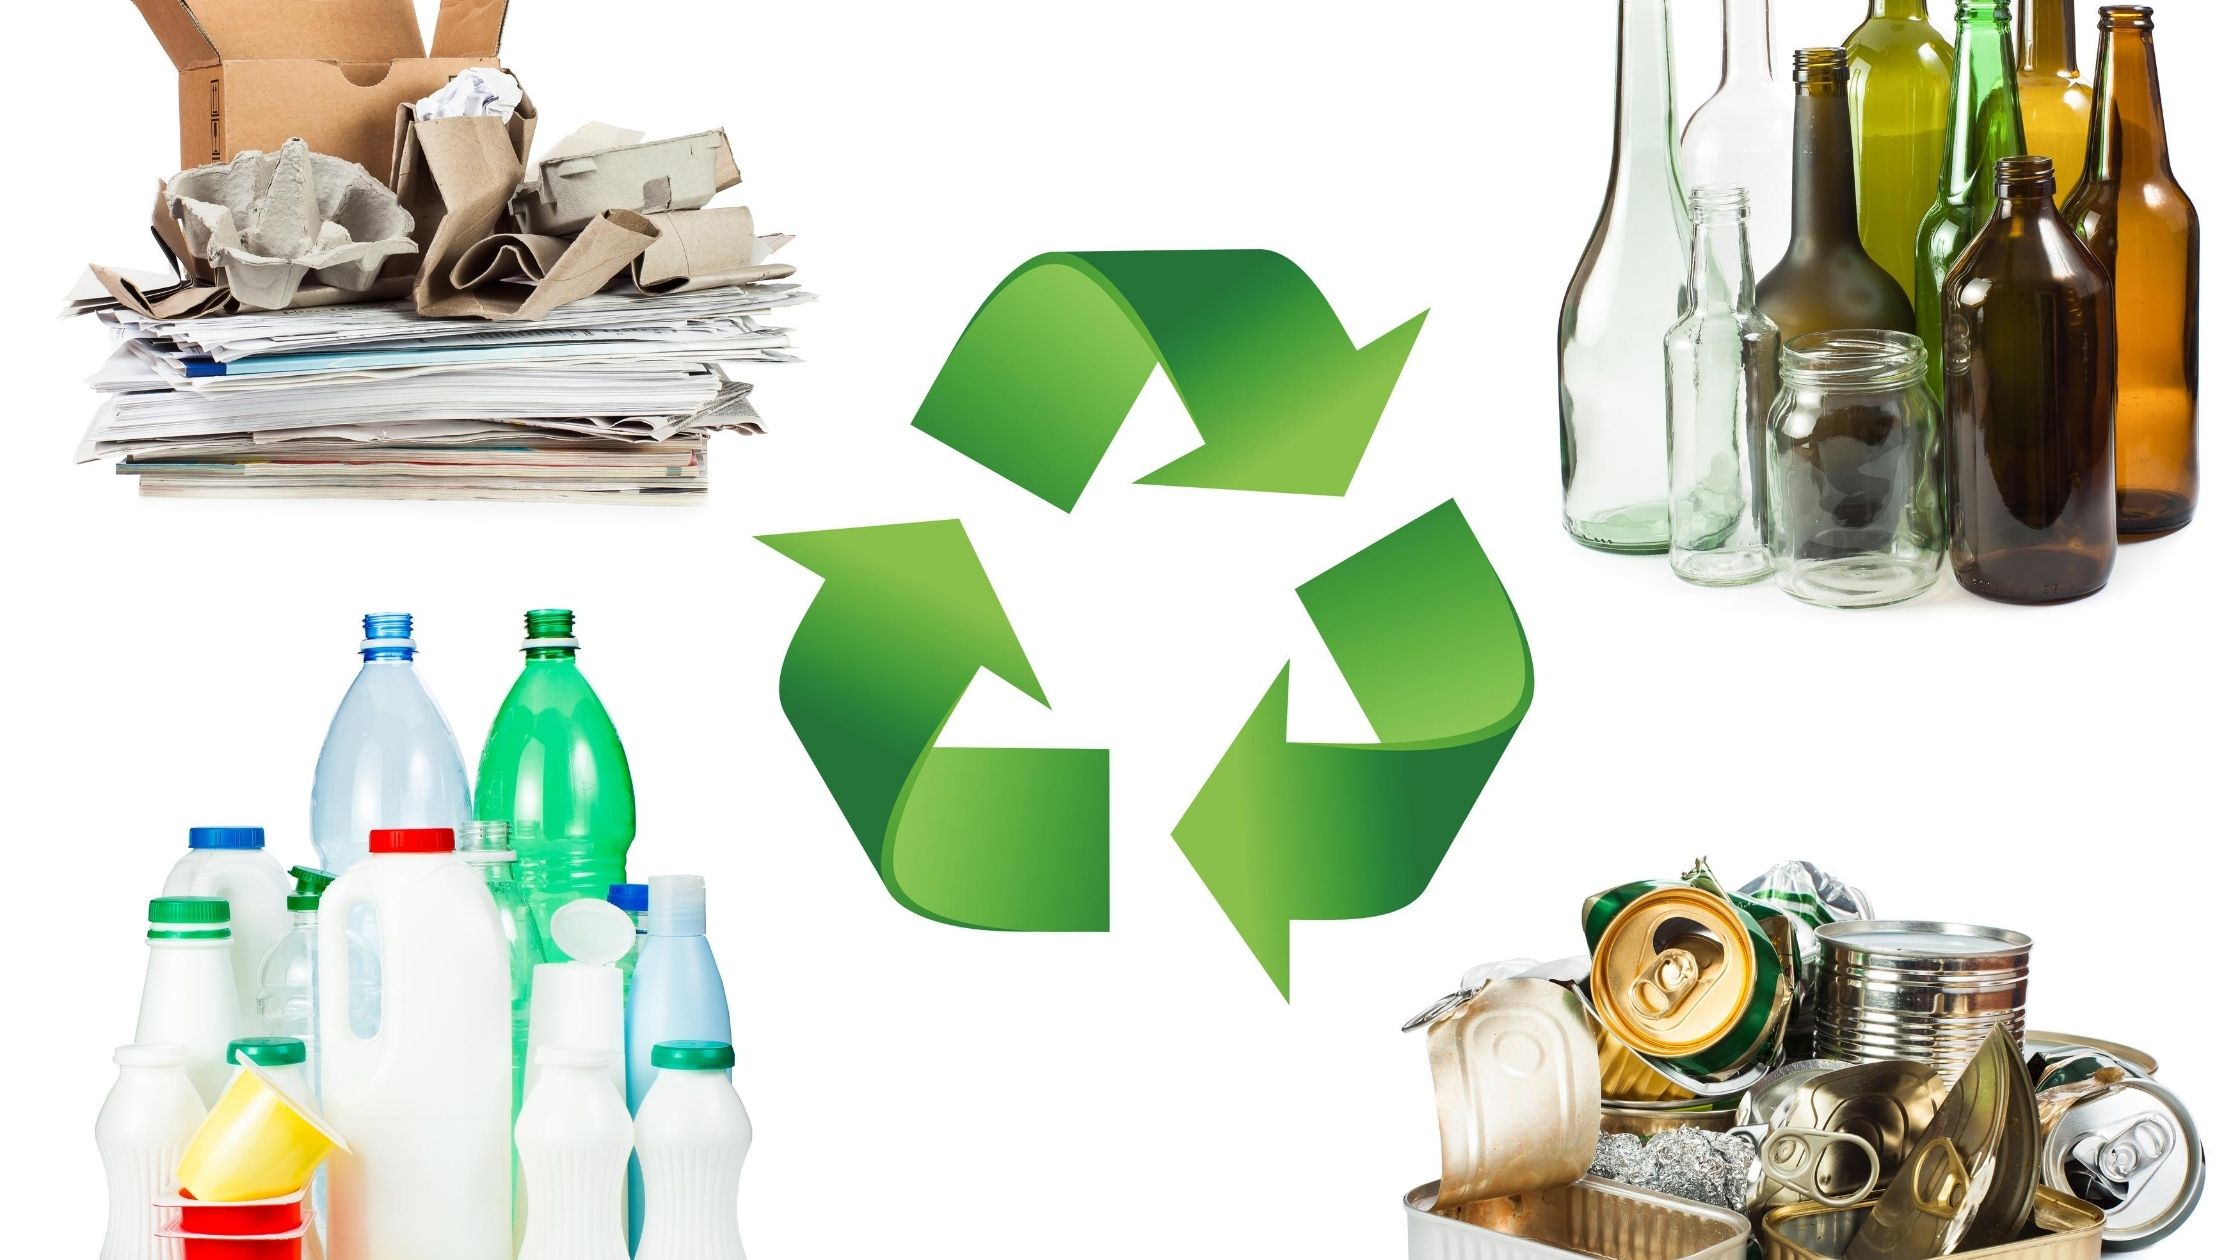 Reciclar cartón, mental y plástico. | Carlos Felipe Law Firm